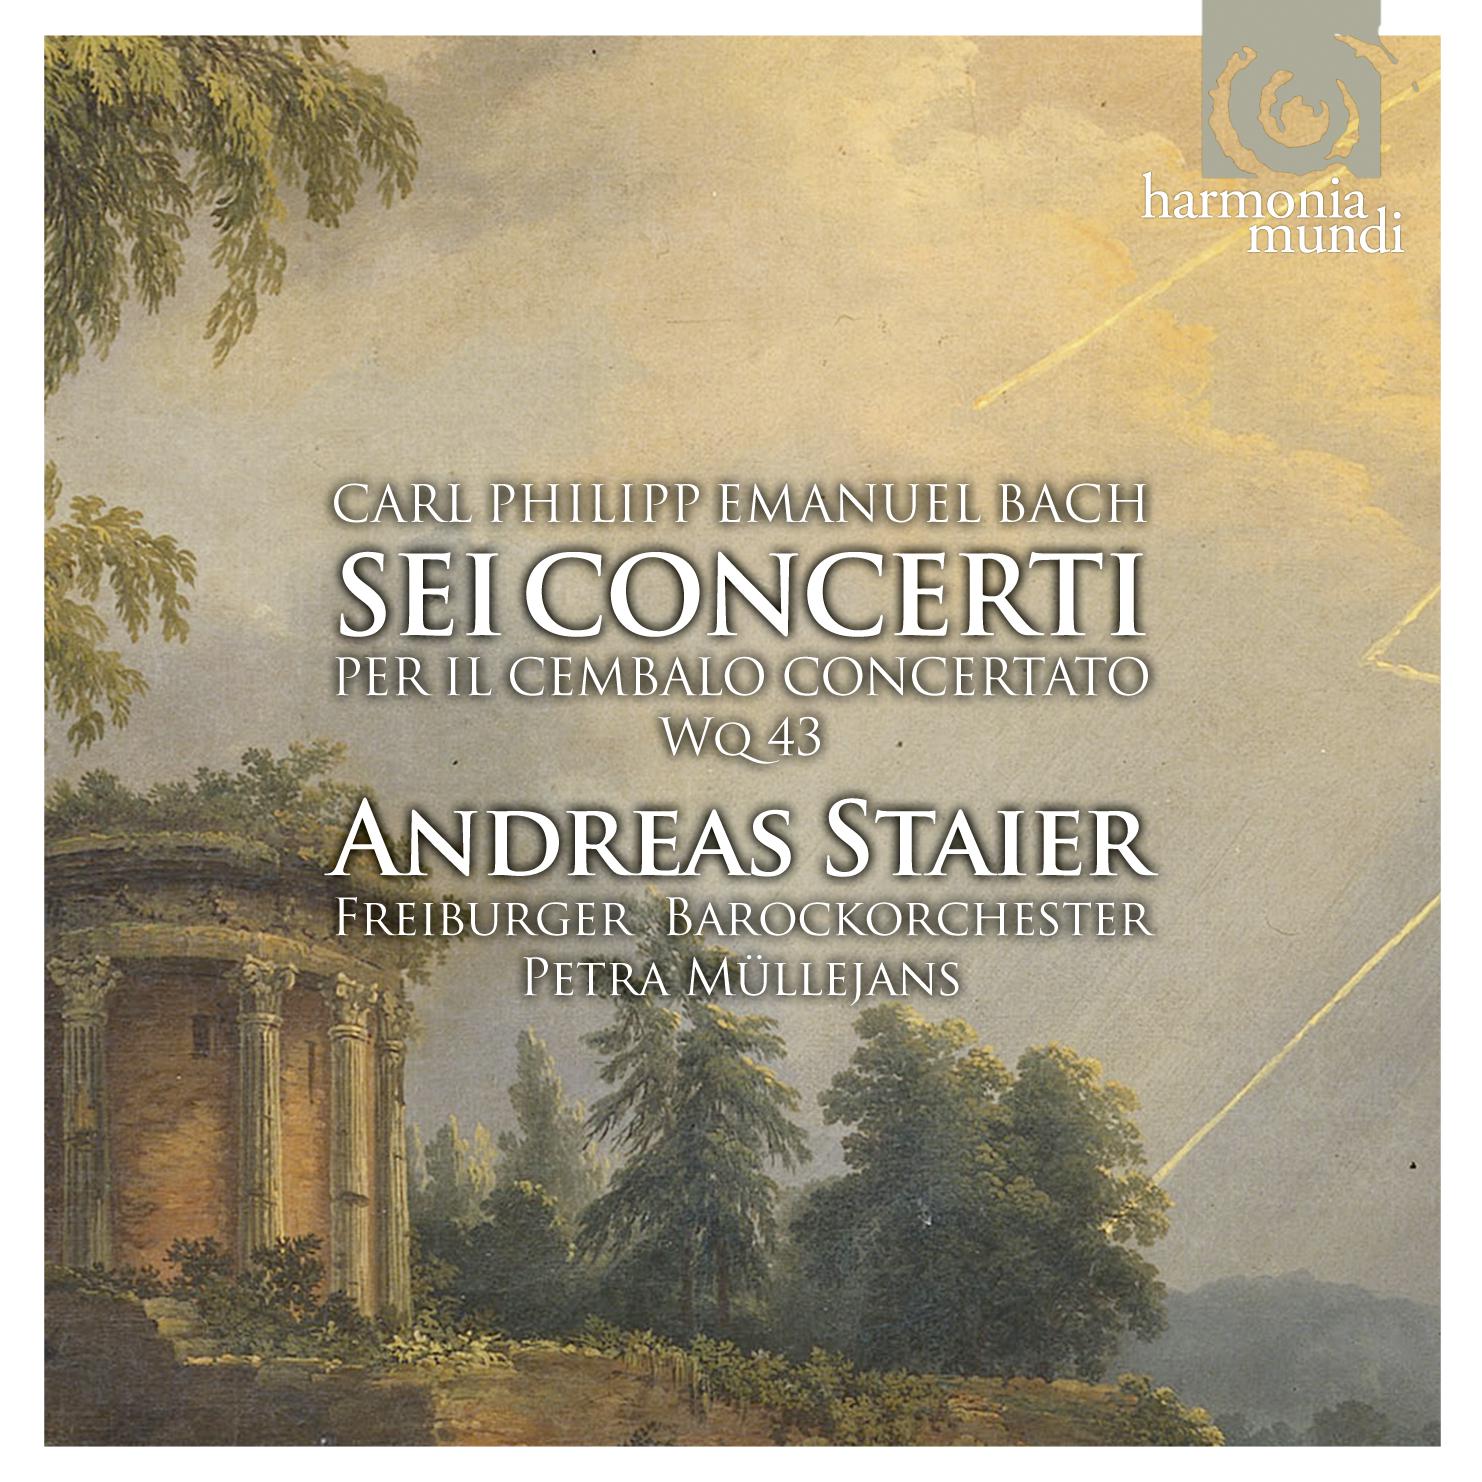 Concerto no.5 in G major: II. Adagio